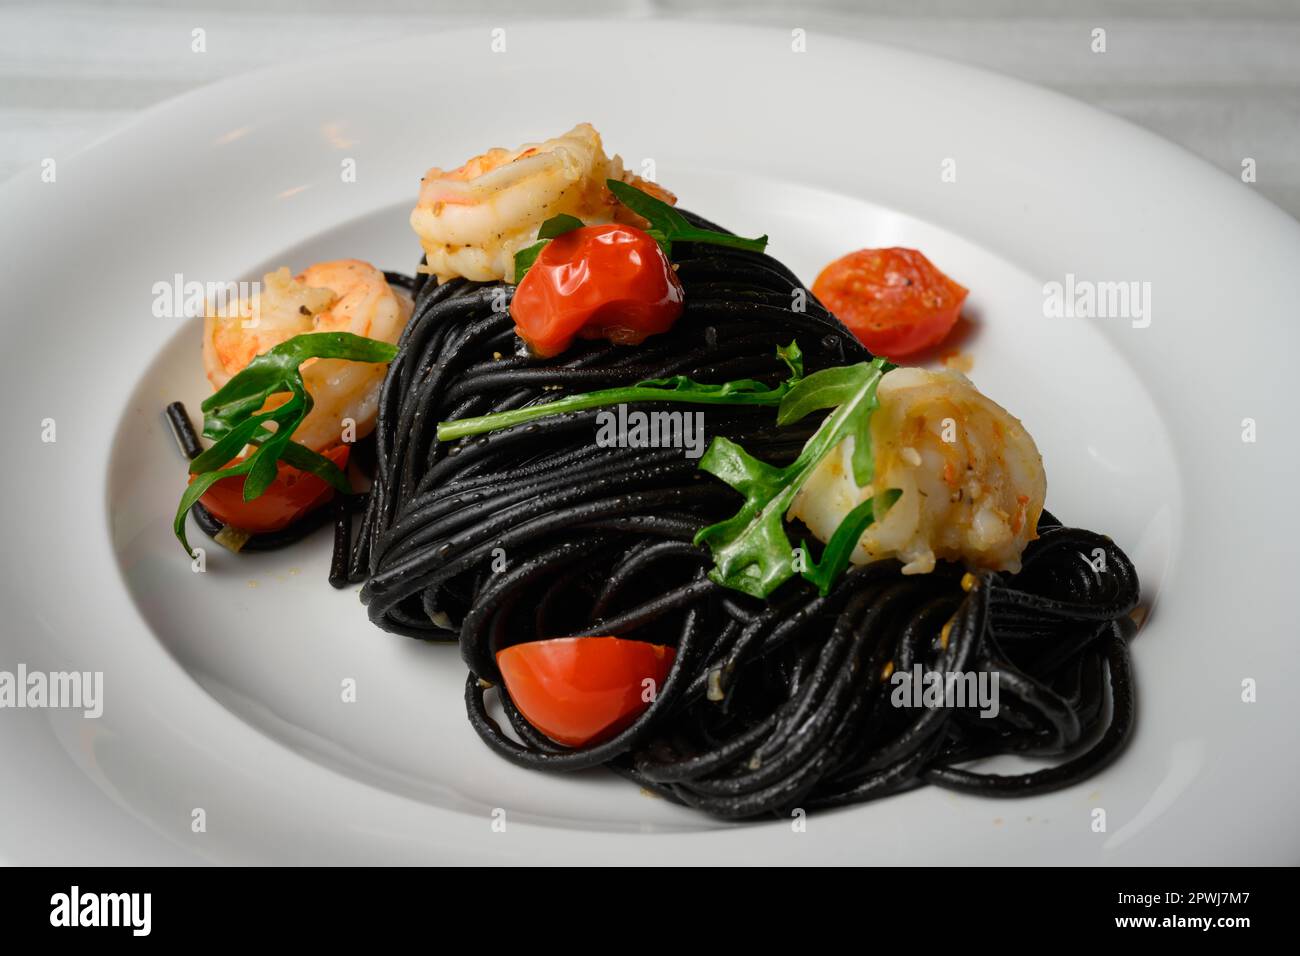 Spaghetti al Nero di Seppia con Gamberi, Italian Pasta with Squid Ink, Prawns, Tomato and Rucola Stock Photo